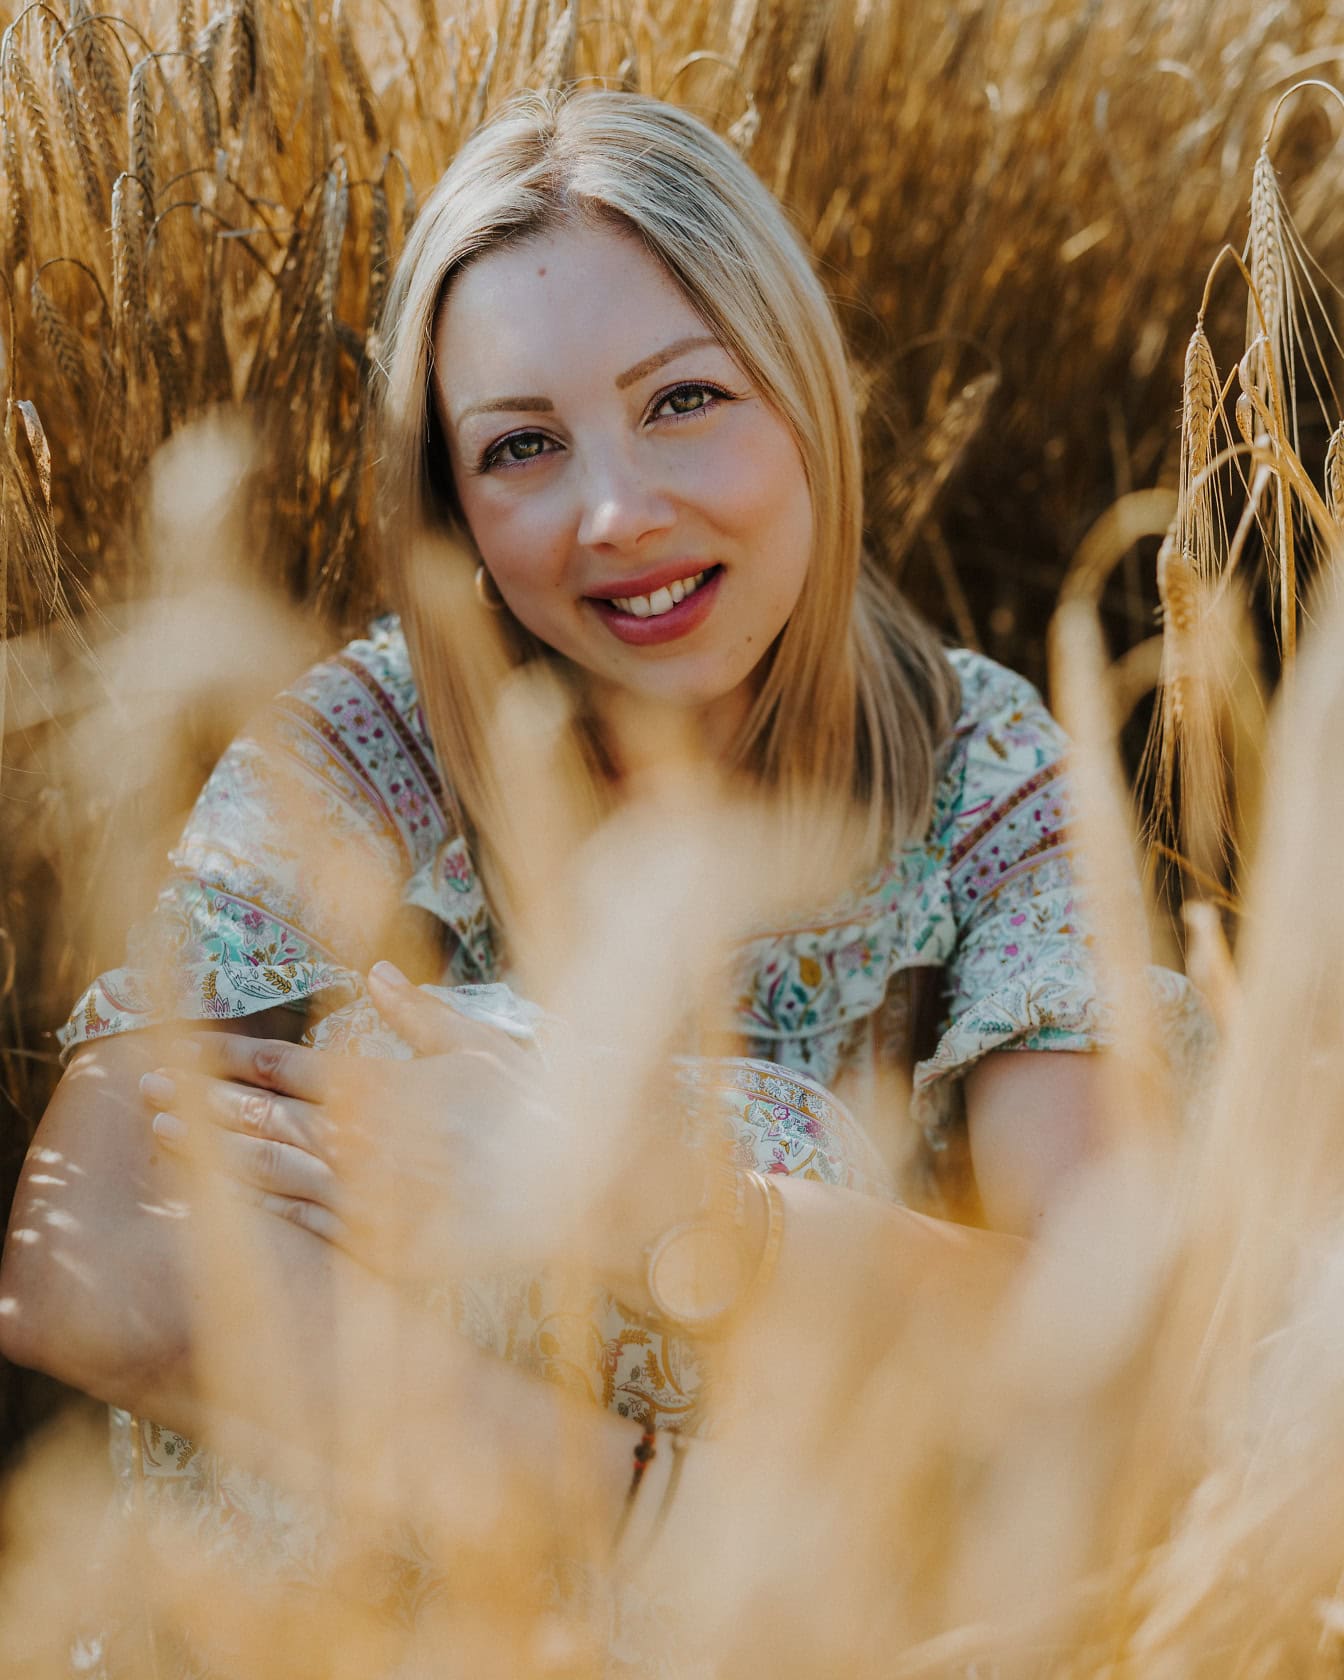 Une beauté à couper le souffle femme blonde assise et souriante dans un champ de blé